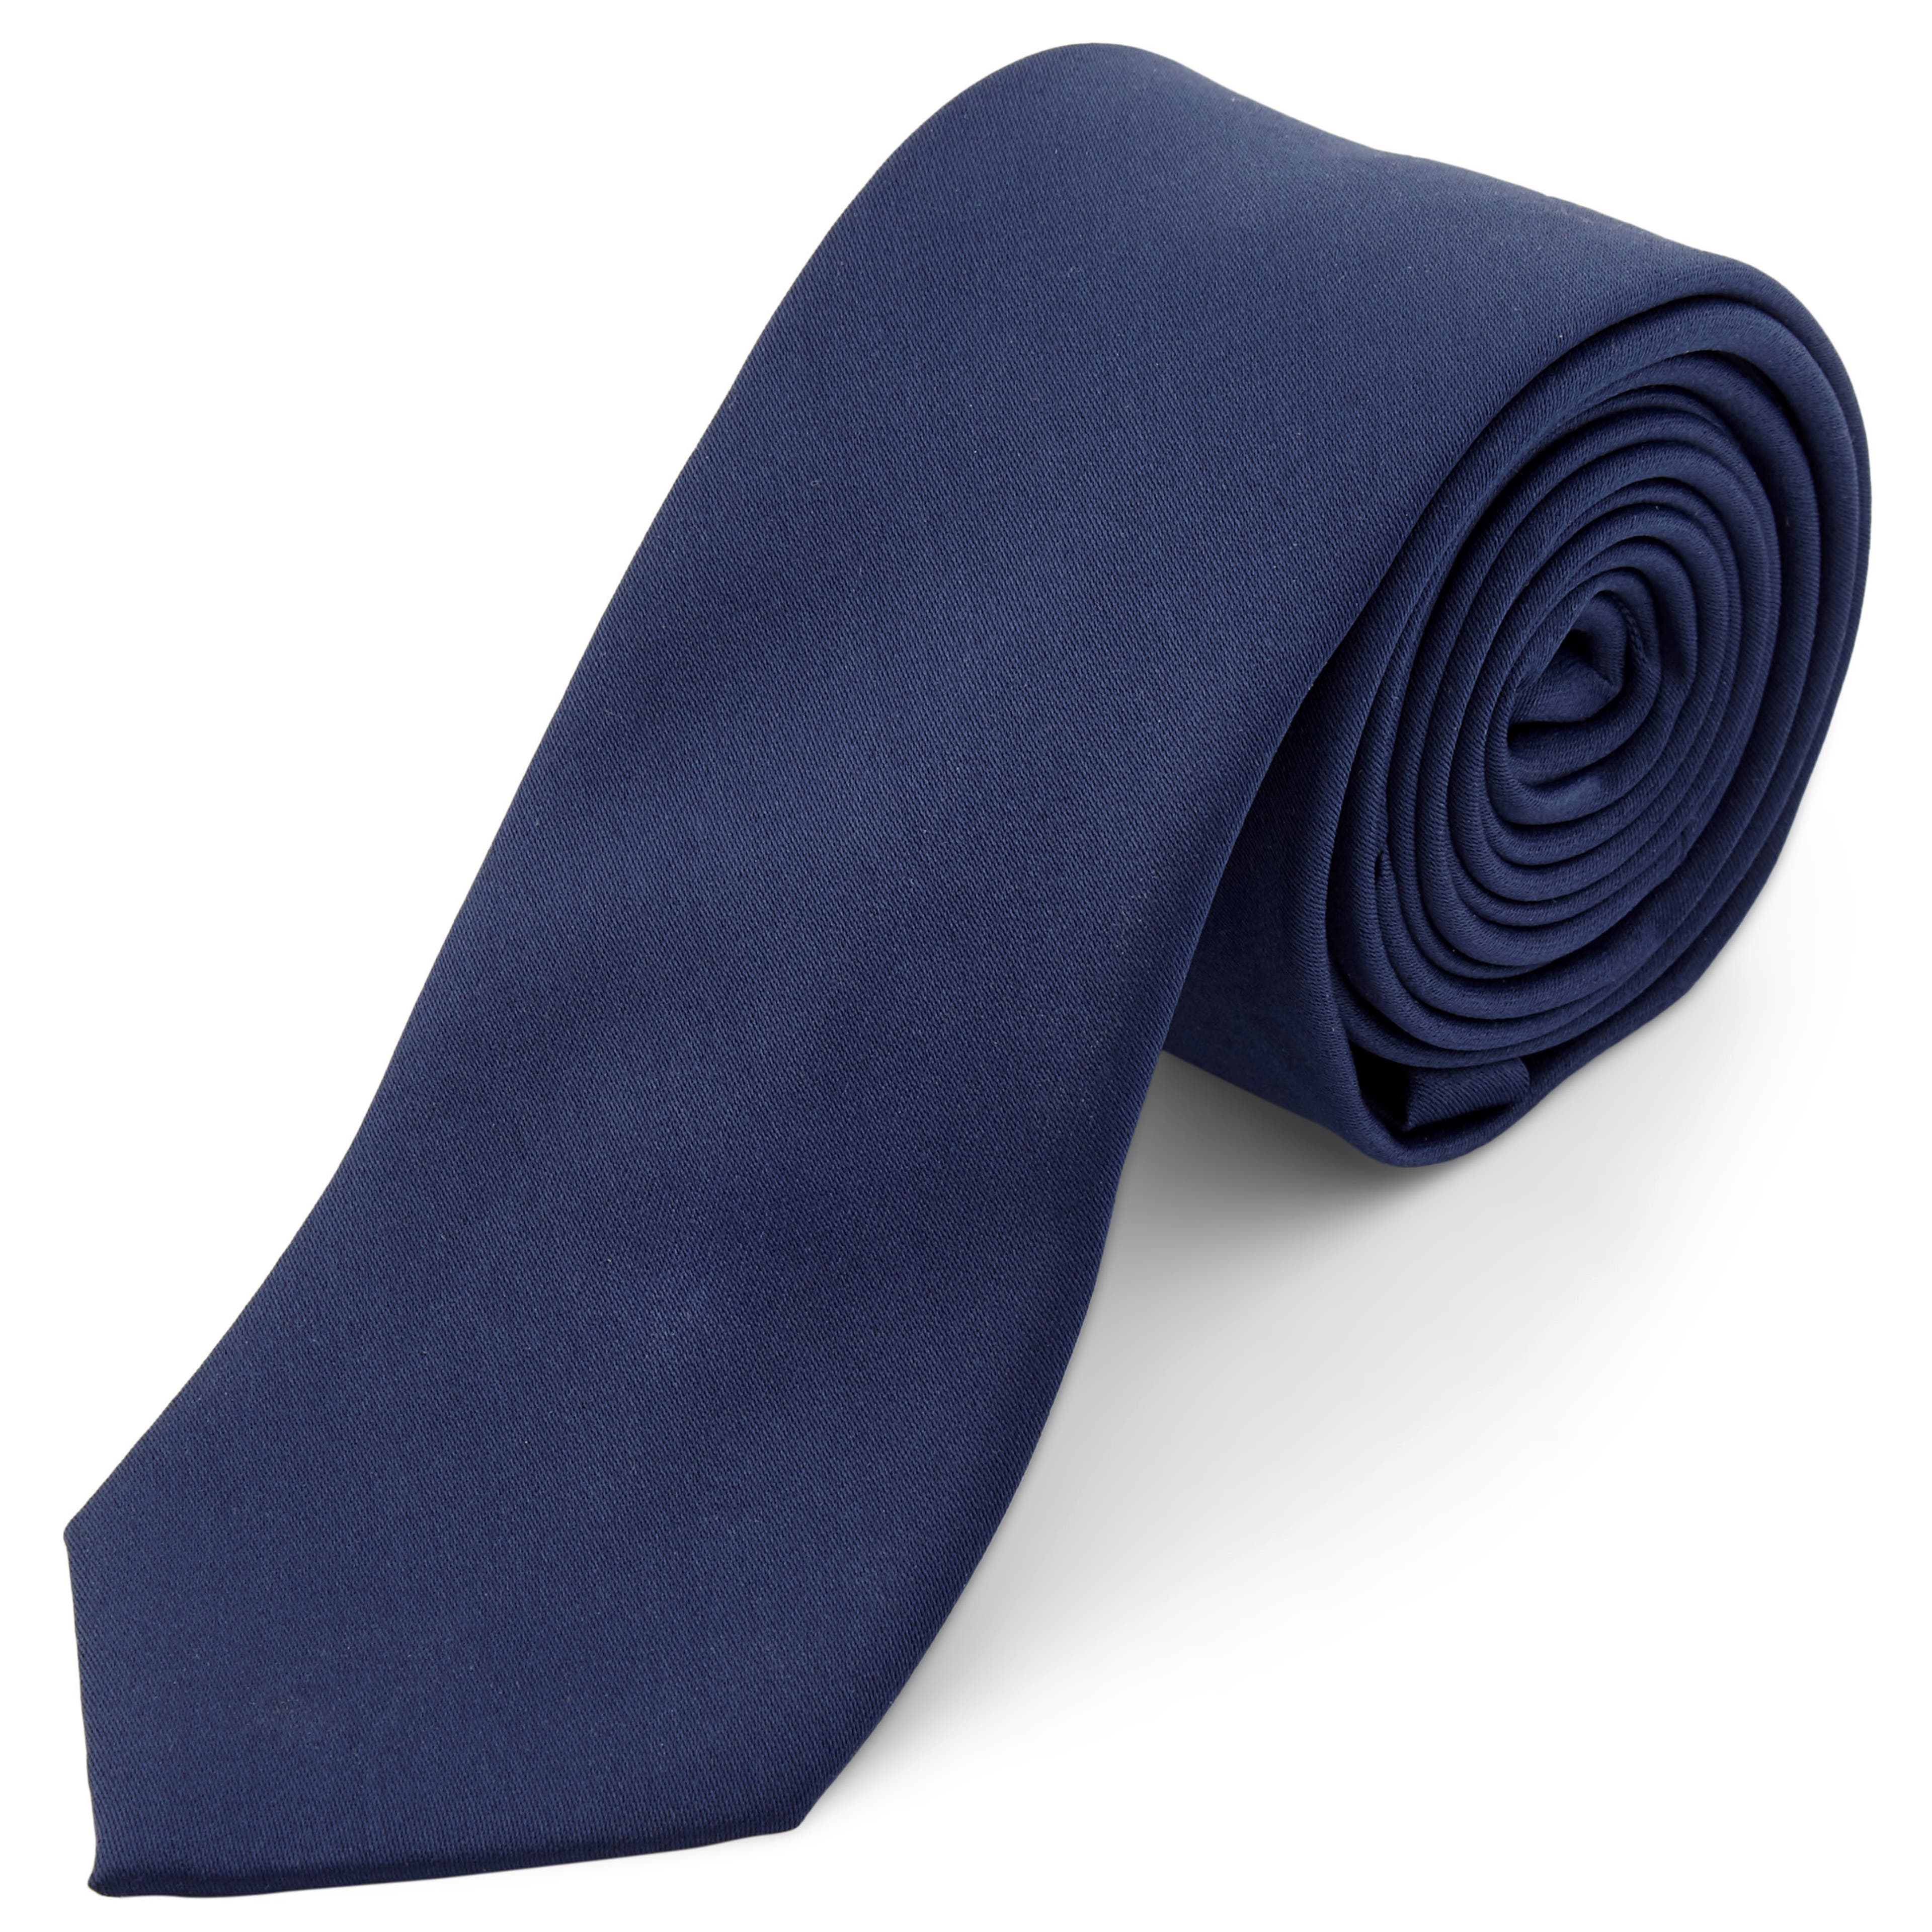 Tengerészkék széles egyszerű nyakkendő - 6 cm